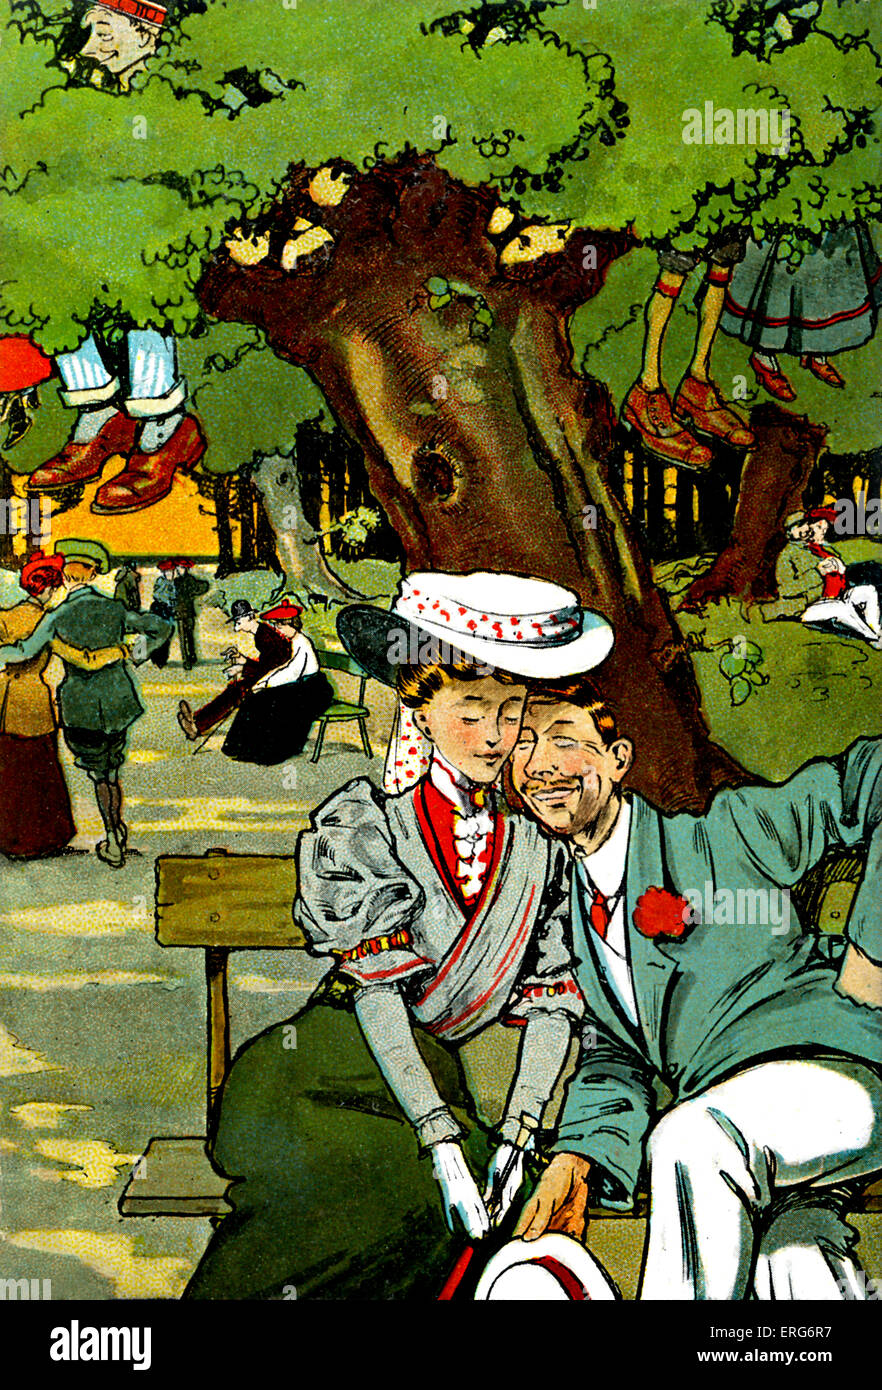 L'Amant à pied à Newbridge. 1907. Carte postale humoristique. Dessin de Tony Sarg, illustrateur américain (1880 - 1942). Banque D'Images